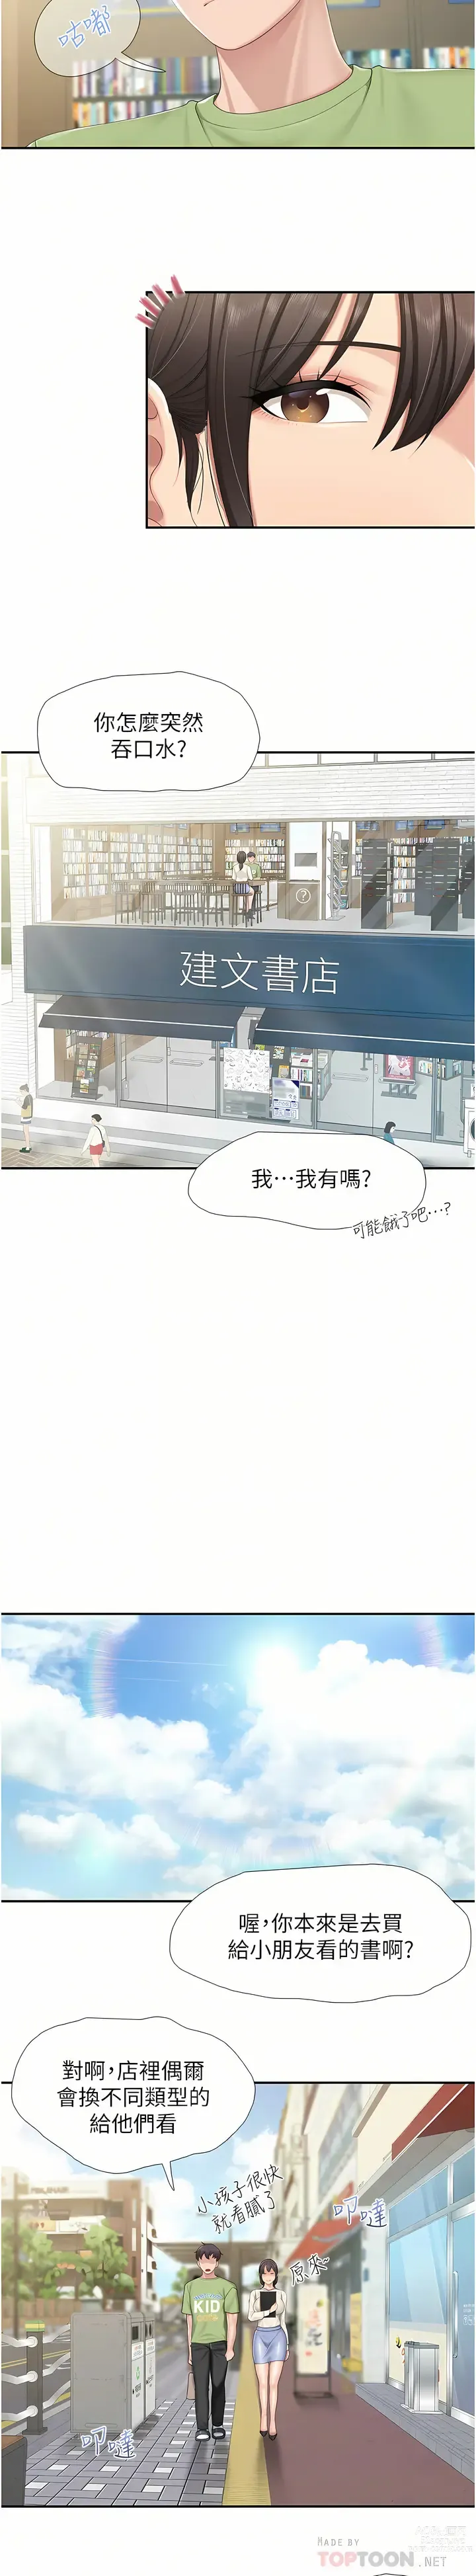 Page 8 of manga 亲子餐厅的妈妈们 51-103